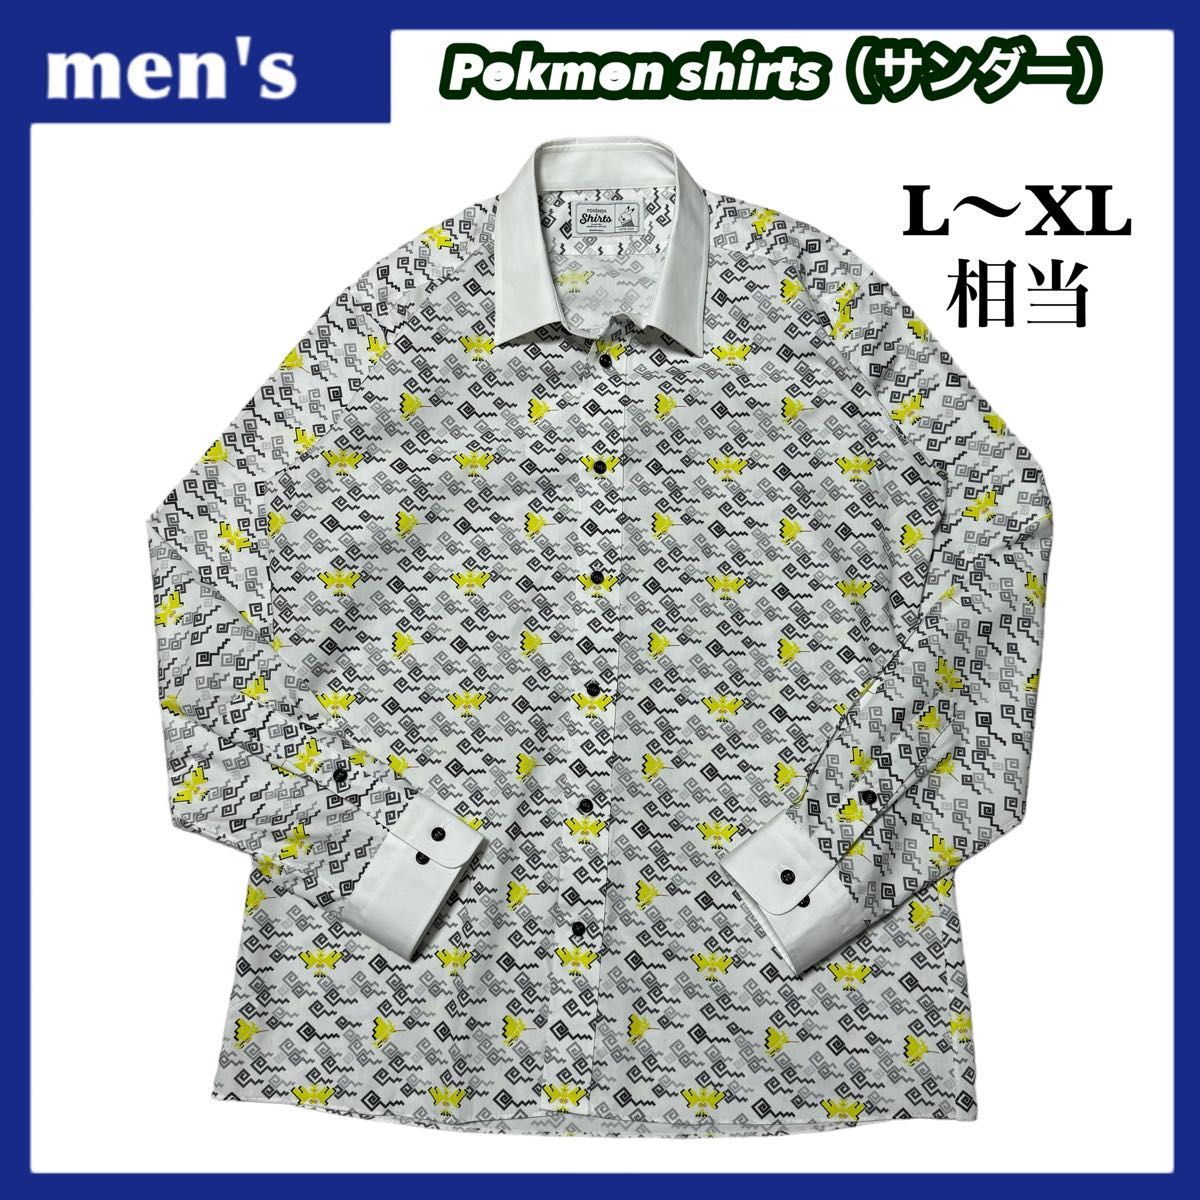 【激レア】Original Stitch オリジナルスティッチ Pokmon shirts ポケモンシャツ サンダー L〜XL